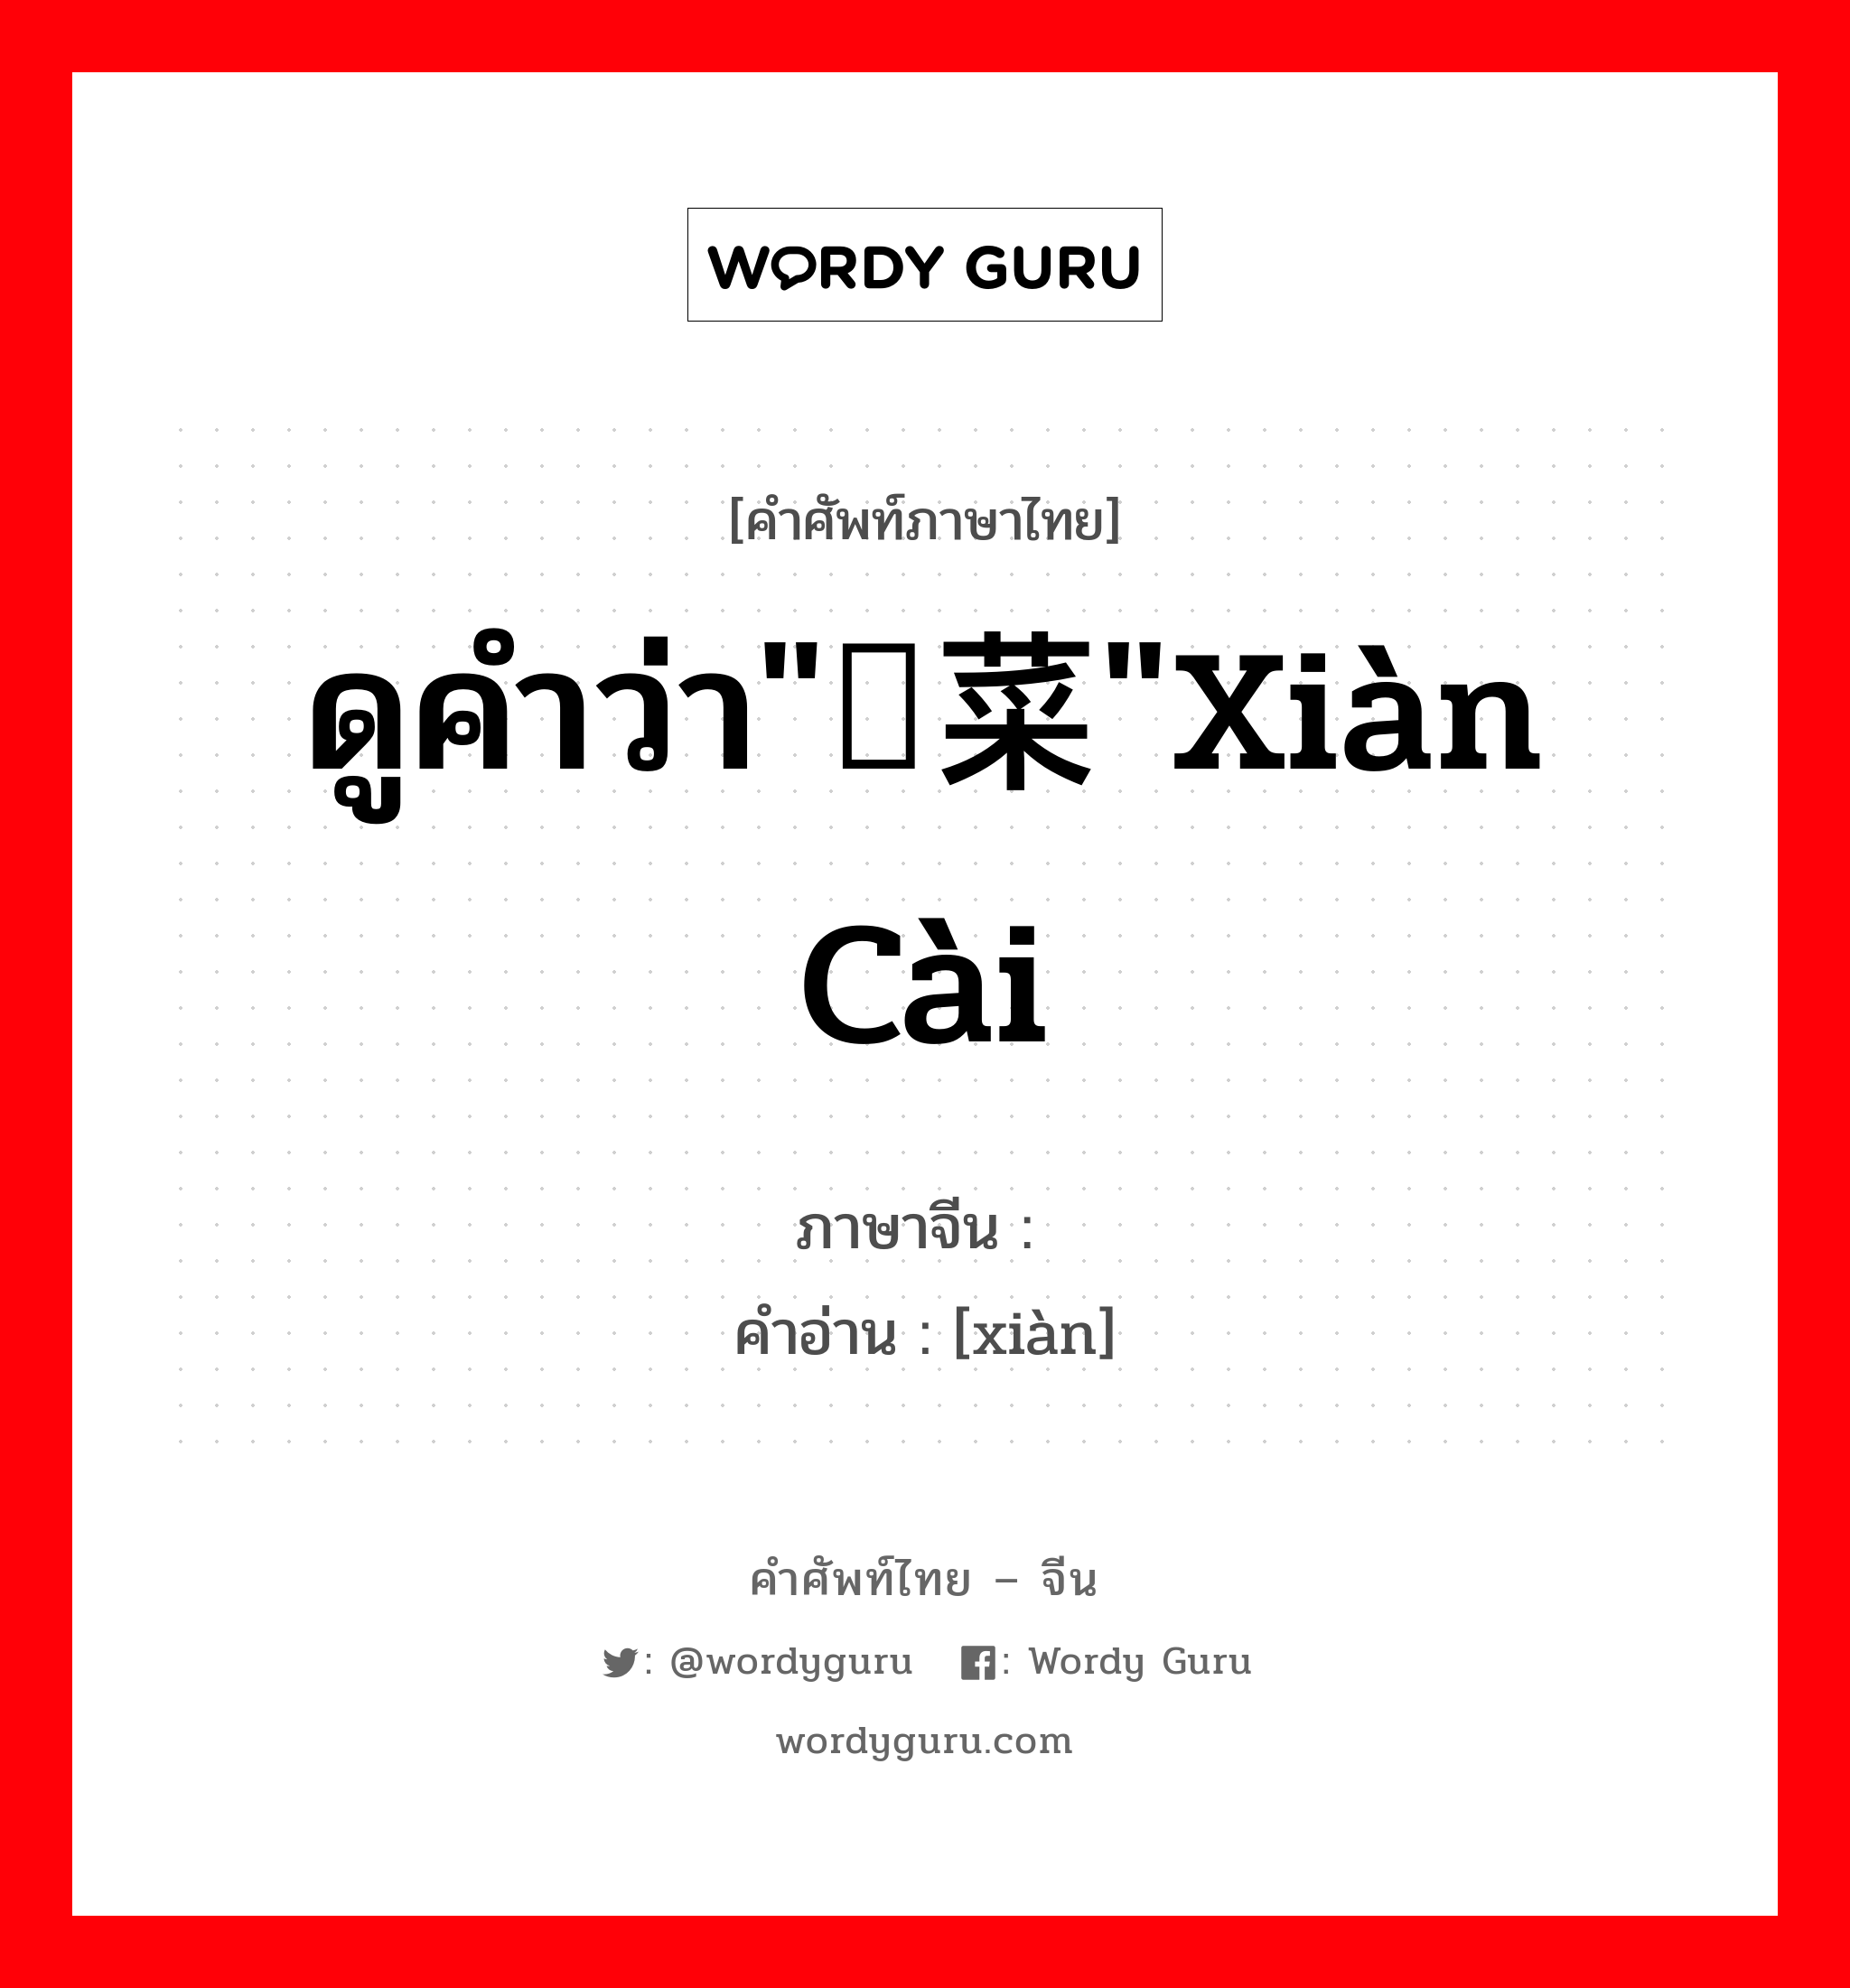 ดูคำว่า"苋菜"xiàn cài ภาษาจีนคืออะไร, คำศัพท์ภาษาไทย - จีน ดูคำว่า"苋菜"xiàn cài ภาษาจีน 苋 คำอ่าน [xiàn]